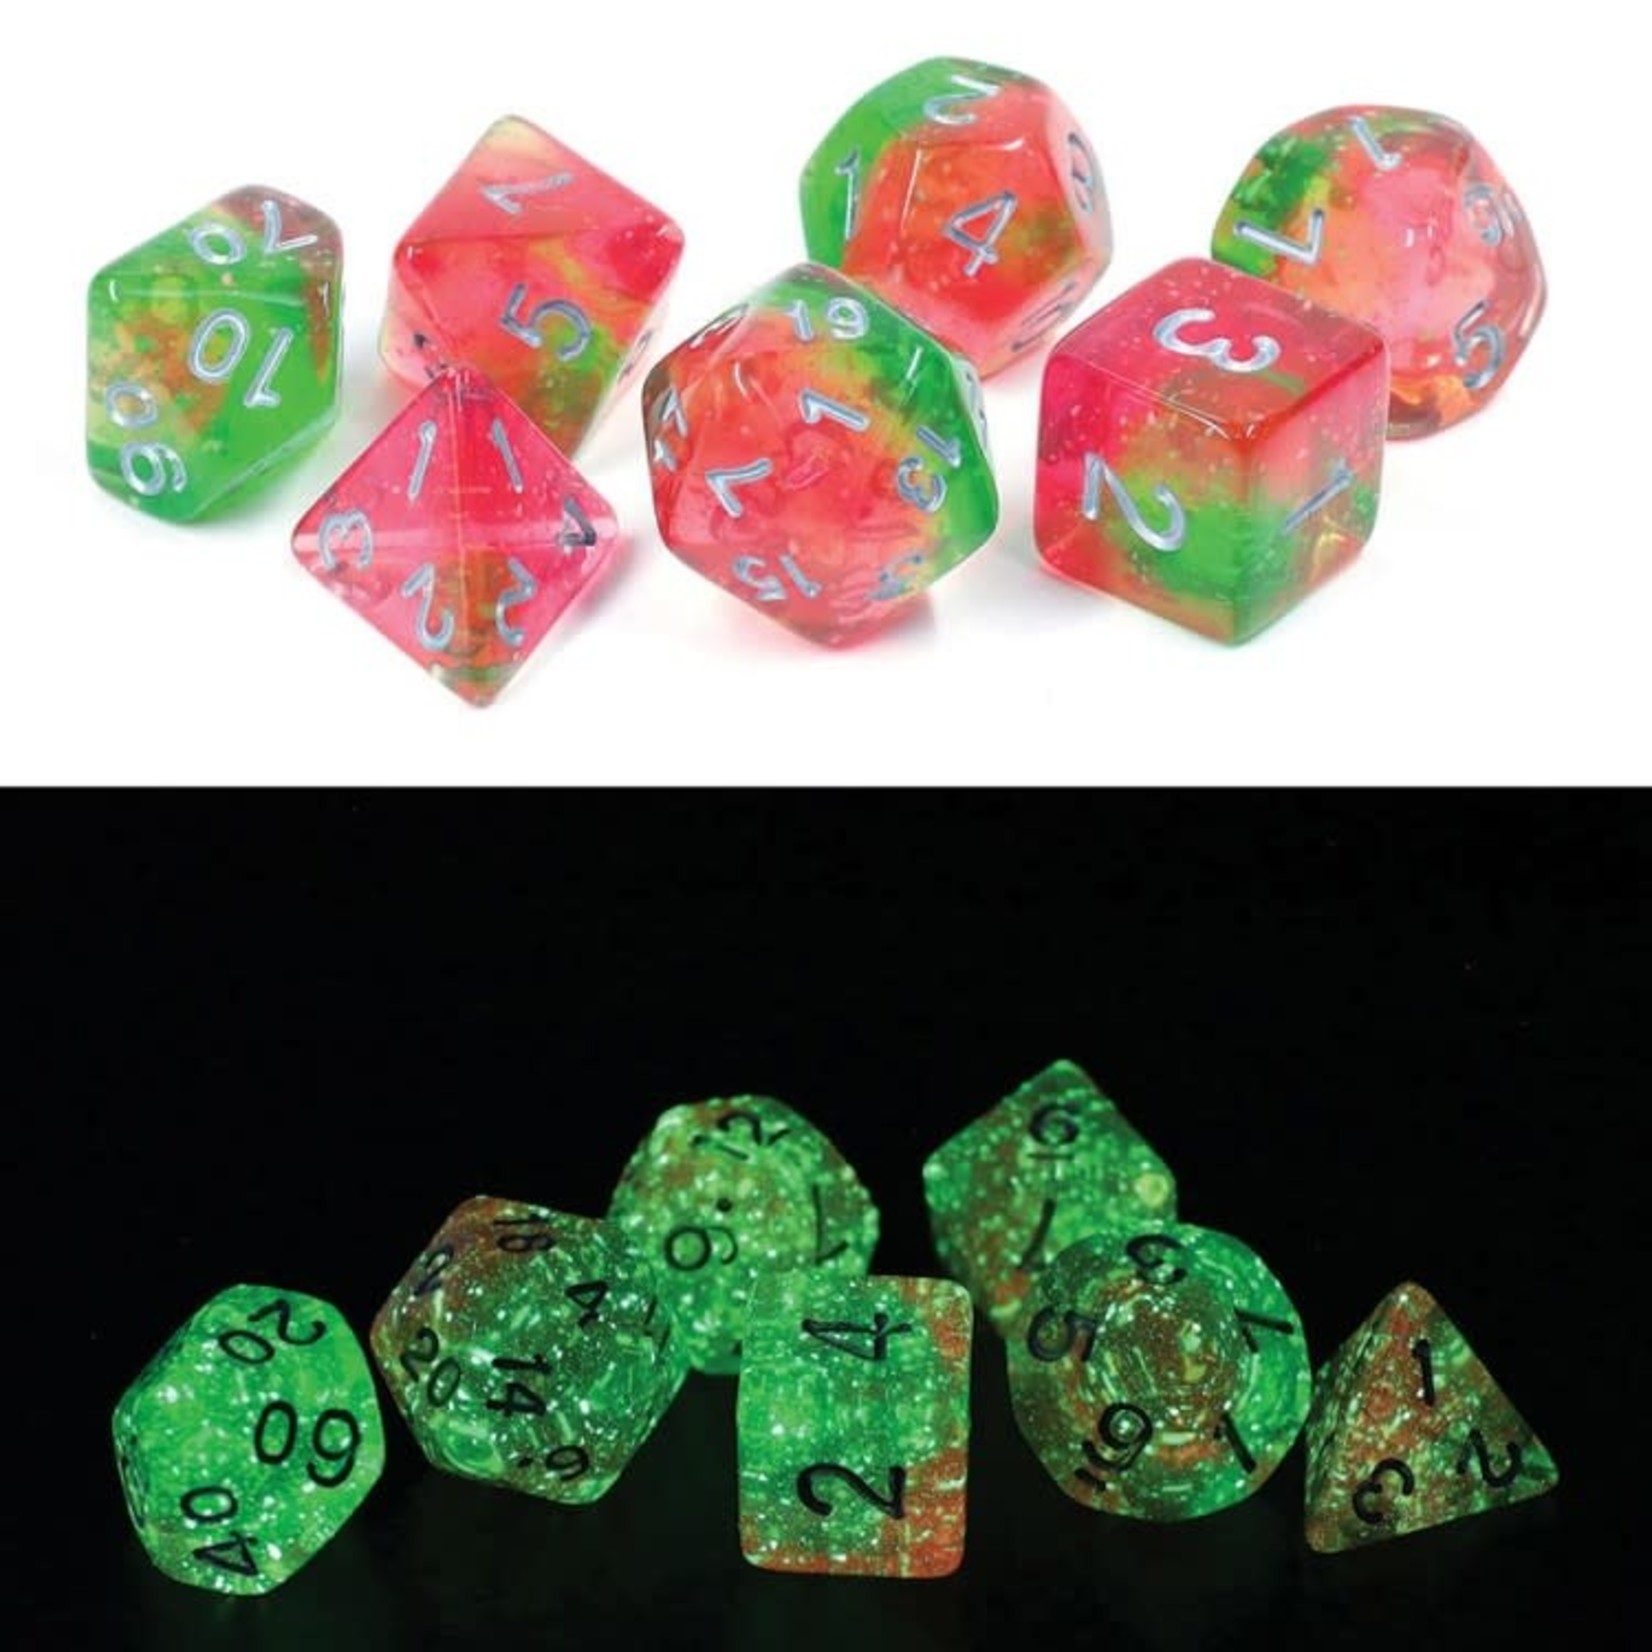 Sirius RPG Dice Glowworm Lotus Pink / Green with Silver Polyhedral 8 die set